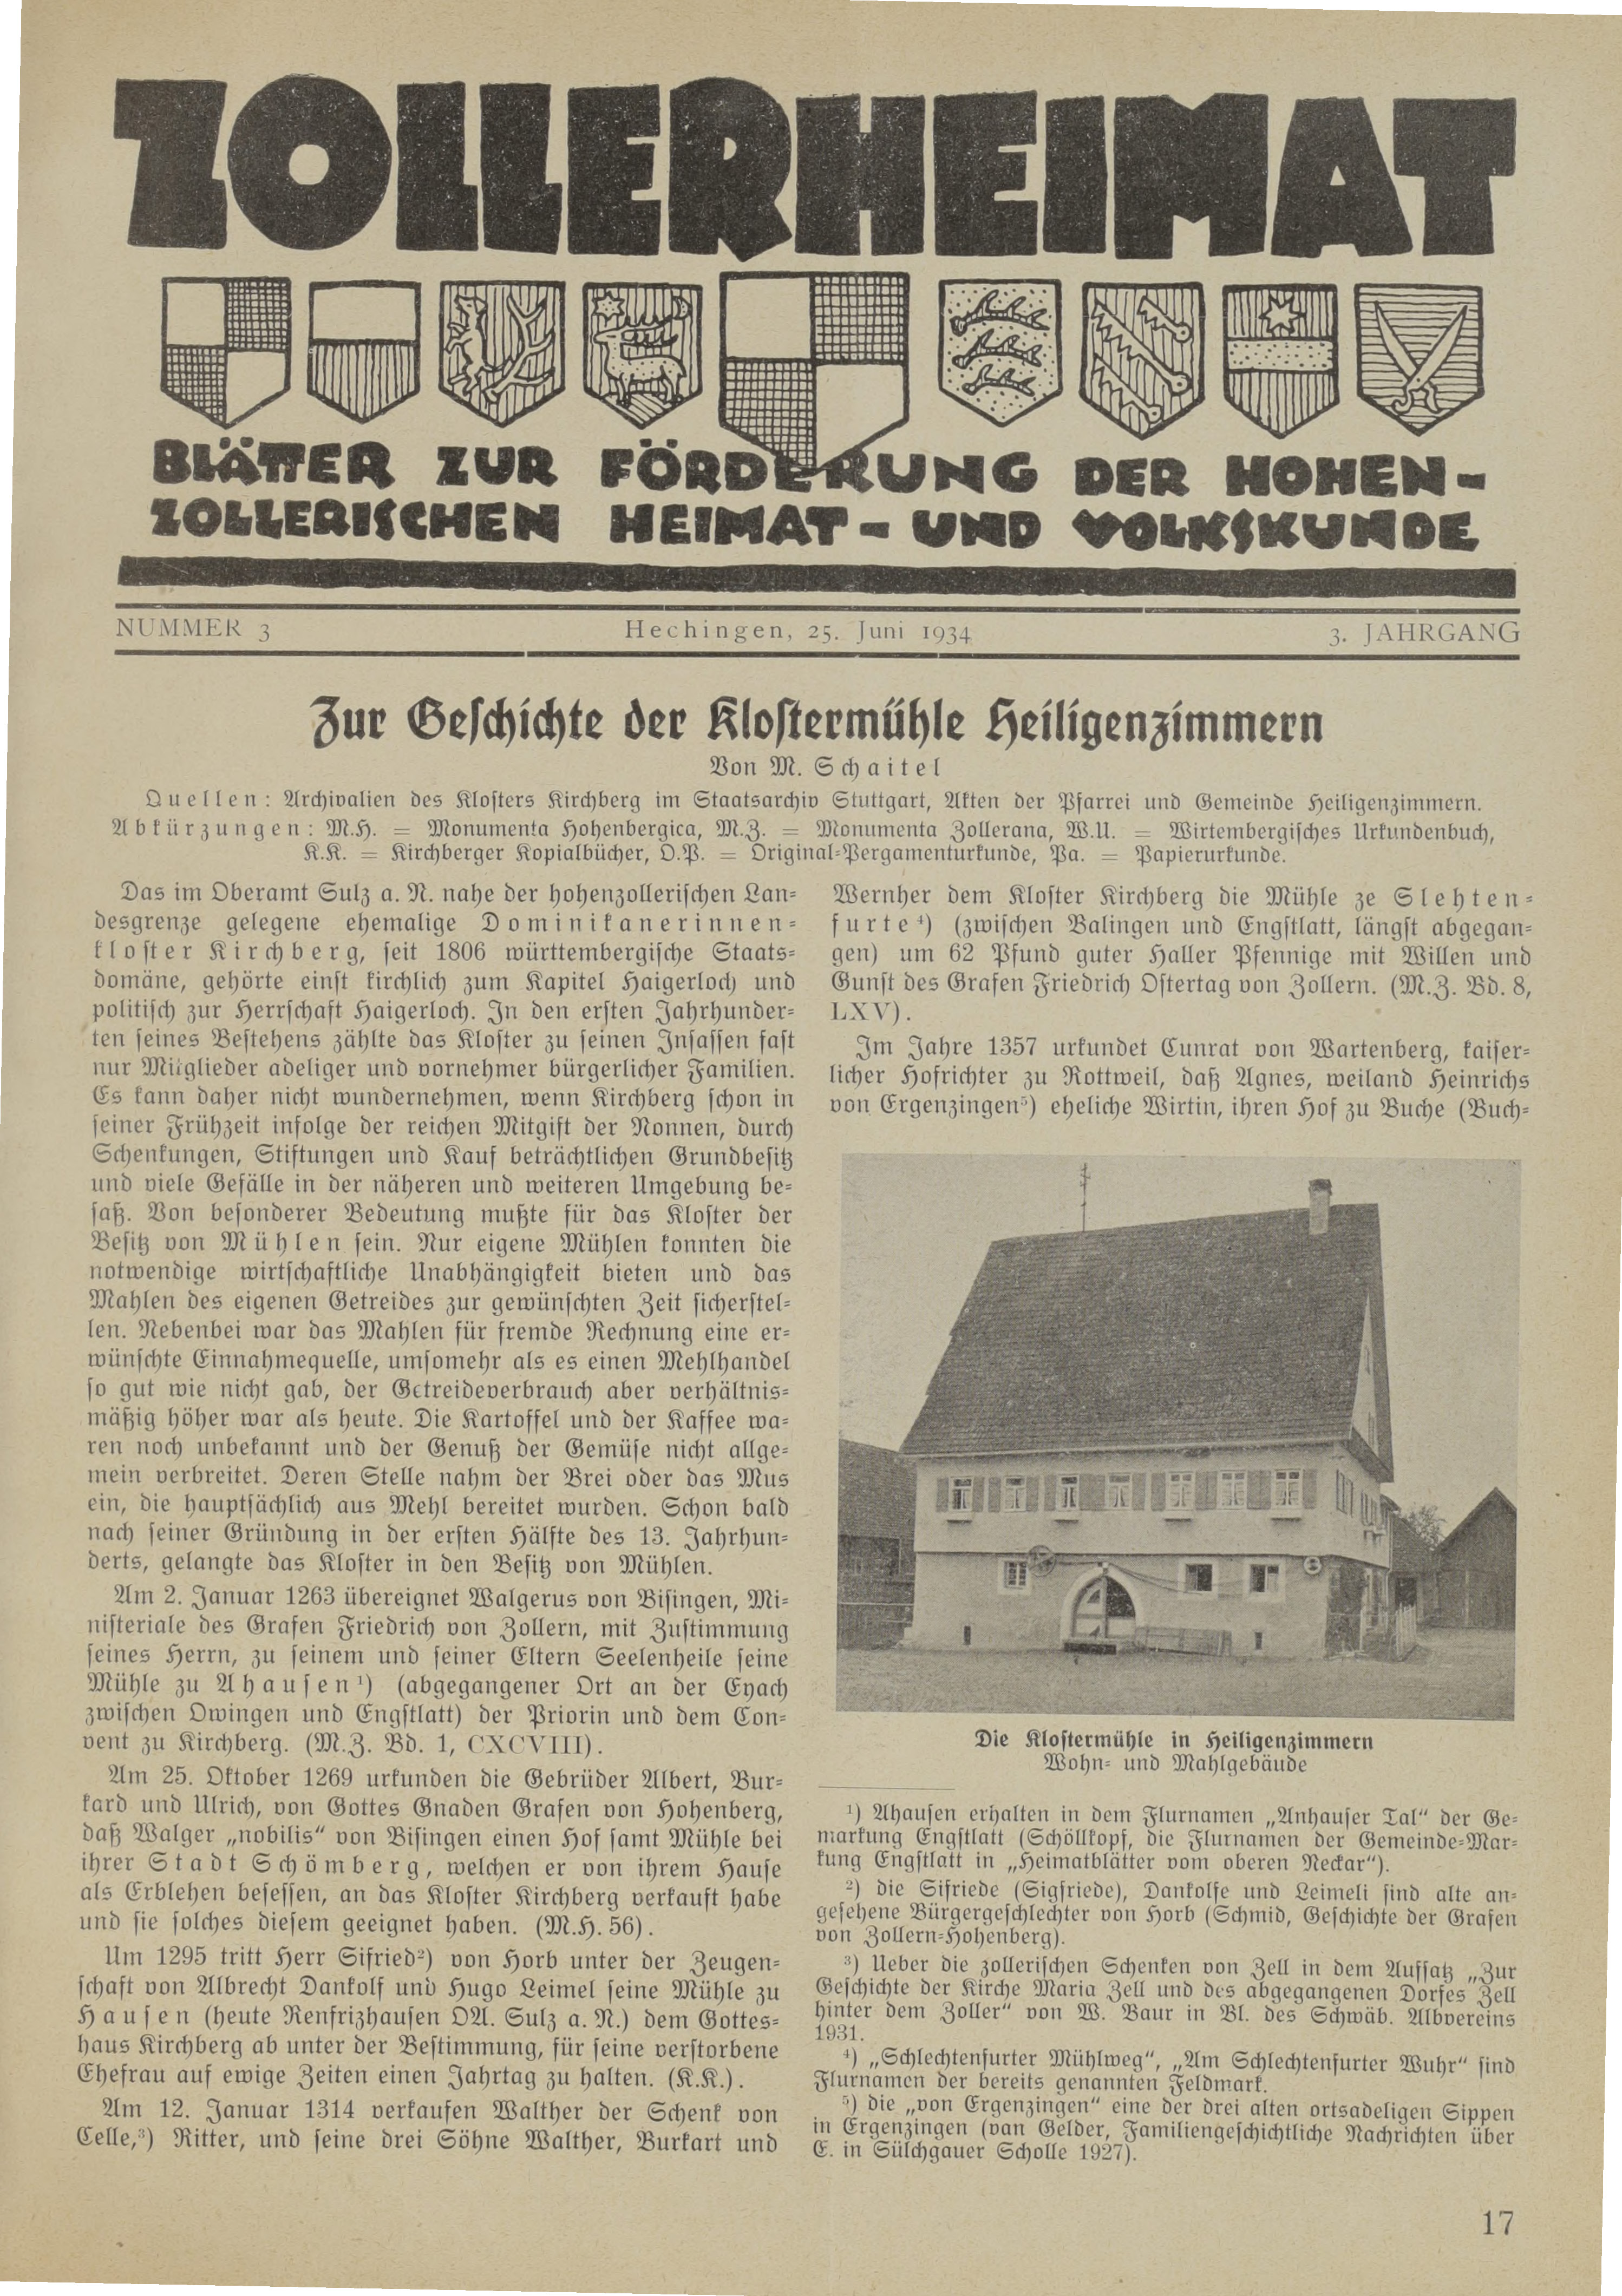                     Ansehen Bd. 3 Nr. 3 (1934): Zollerheimat
                